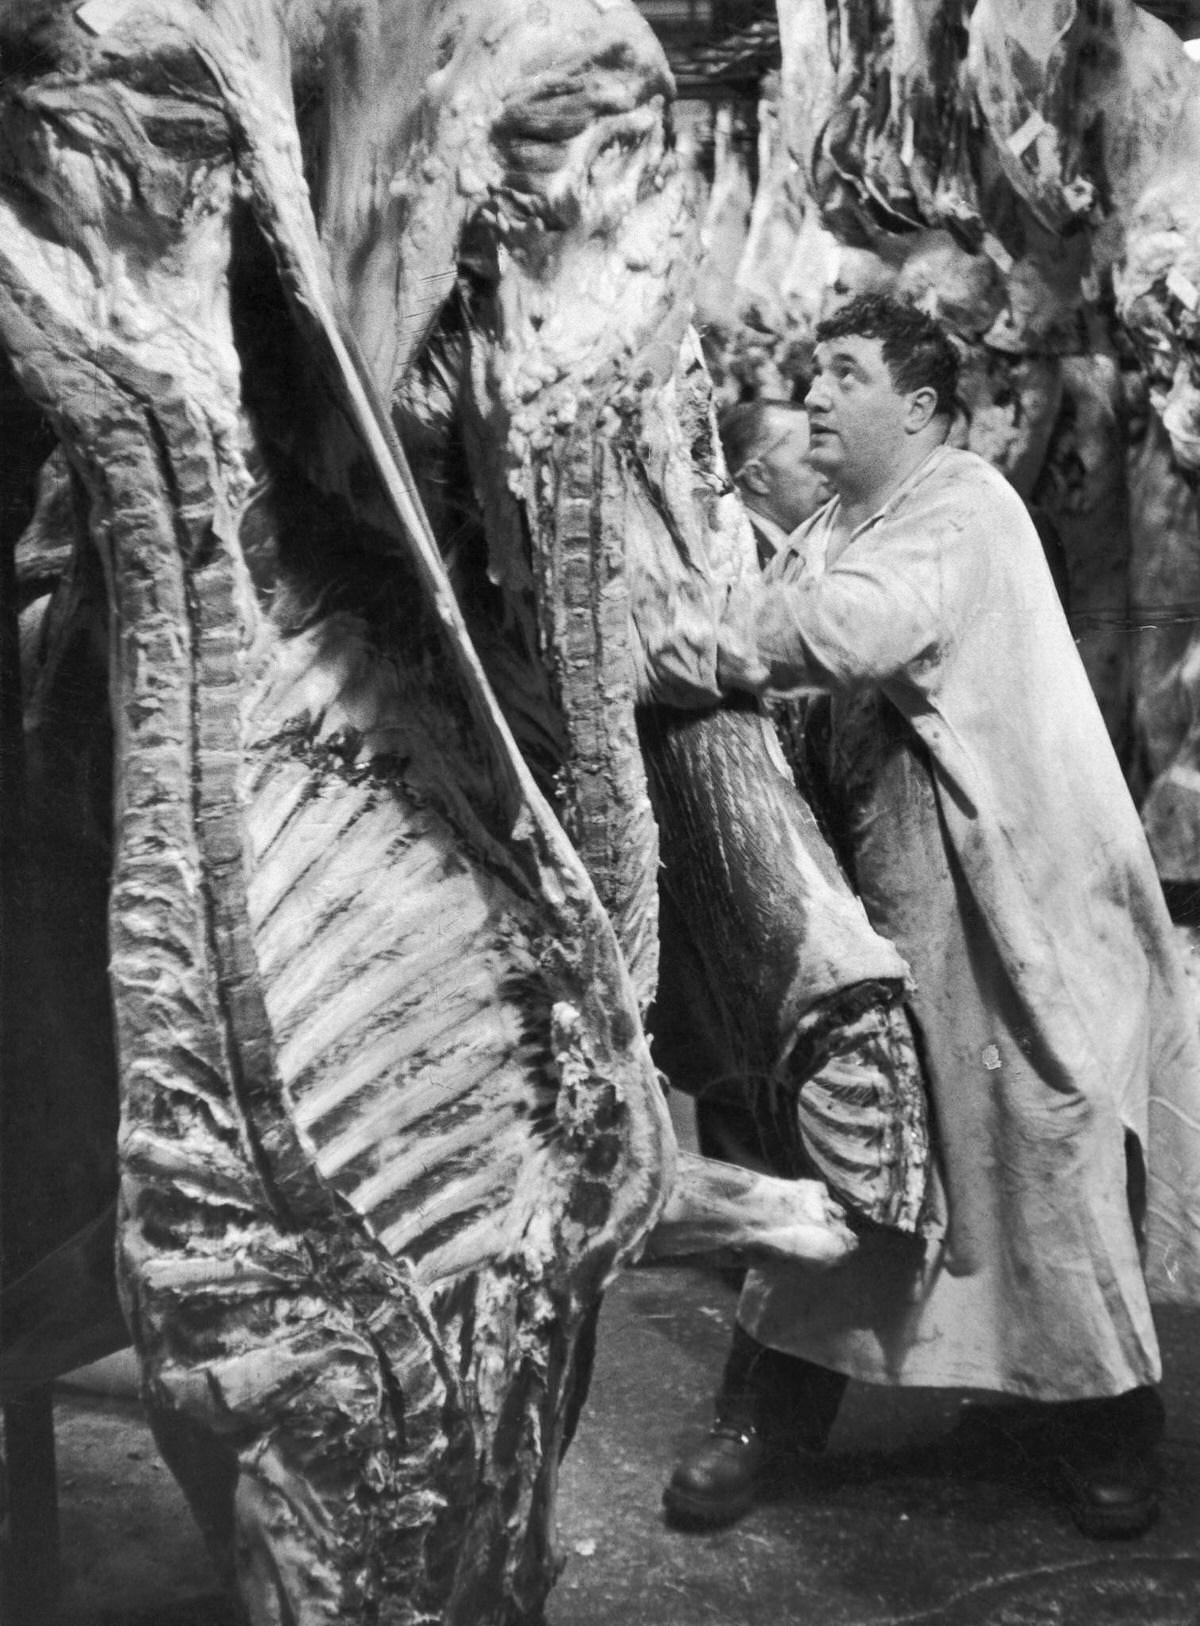 The Butchery of Les Halles, Paris, 1950.